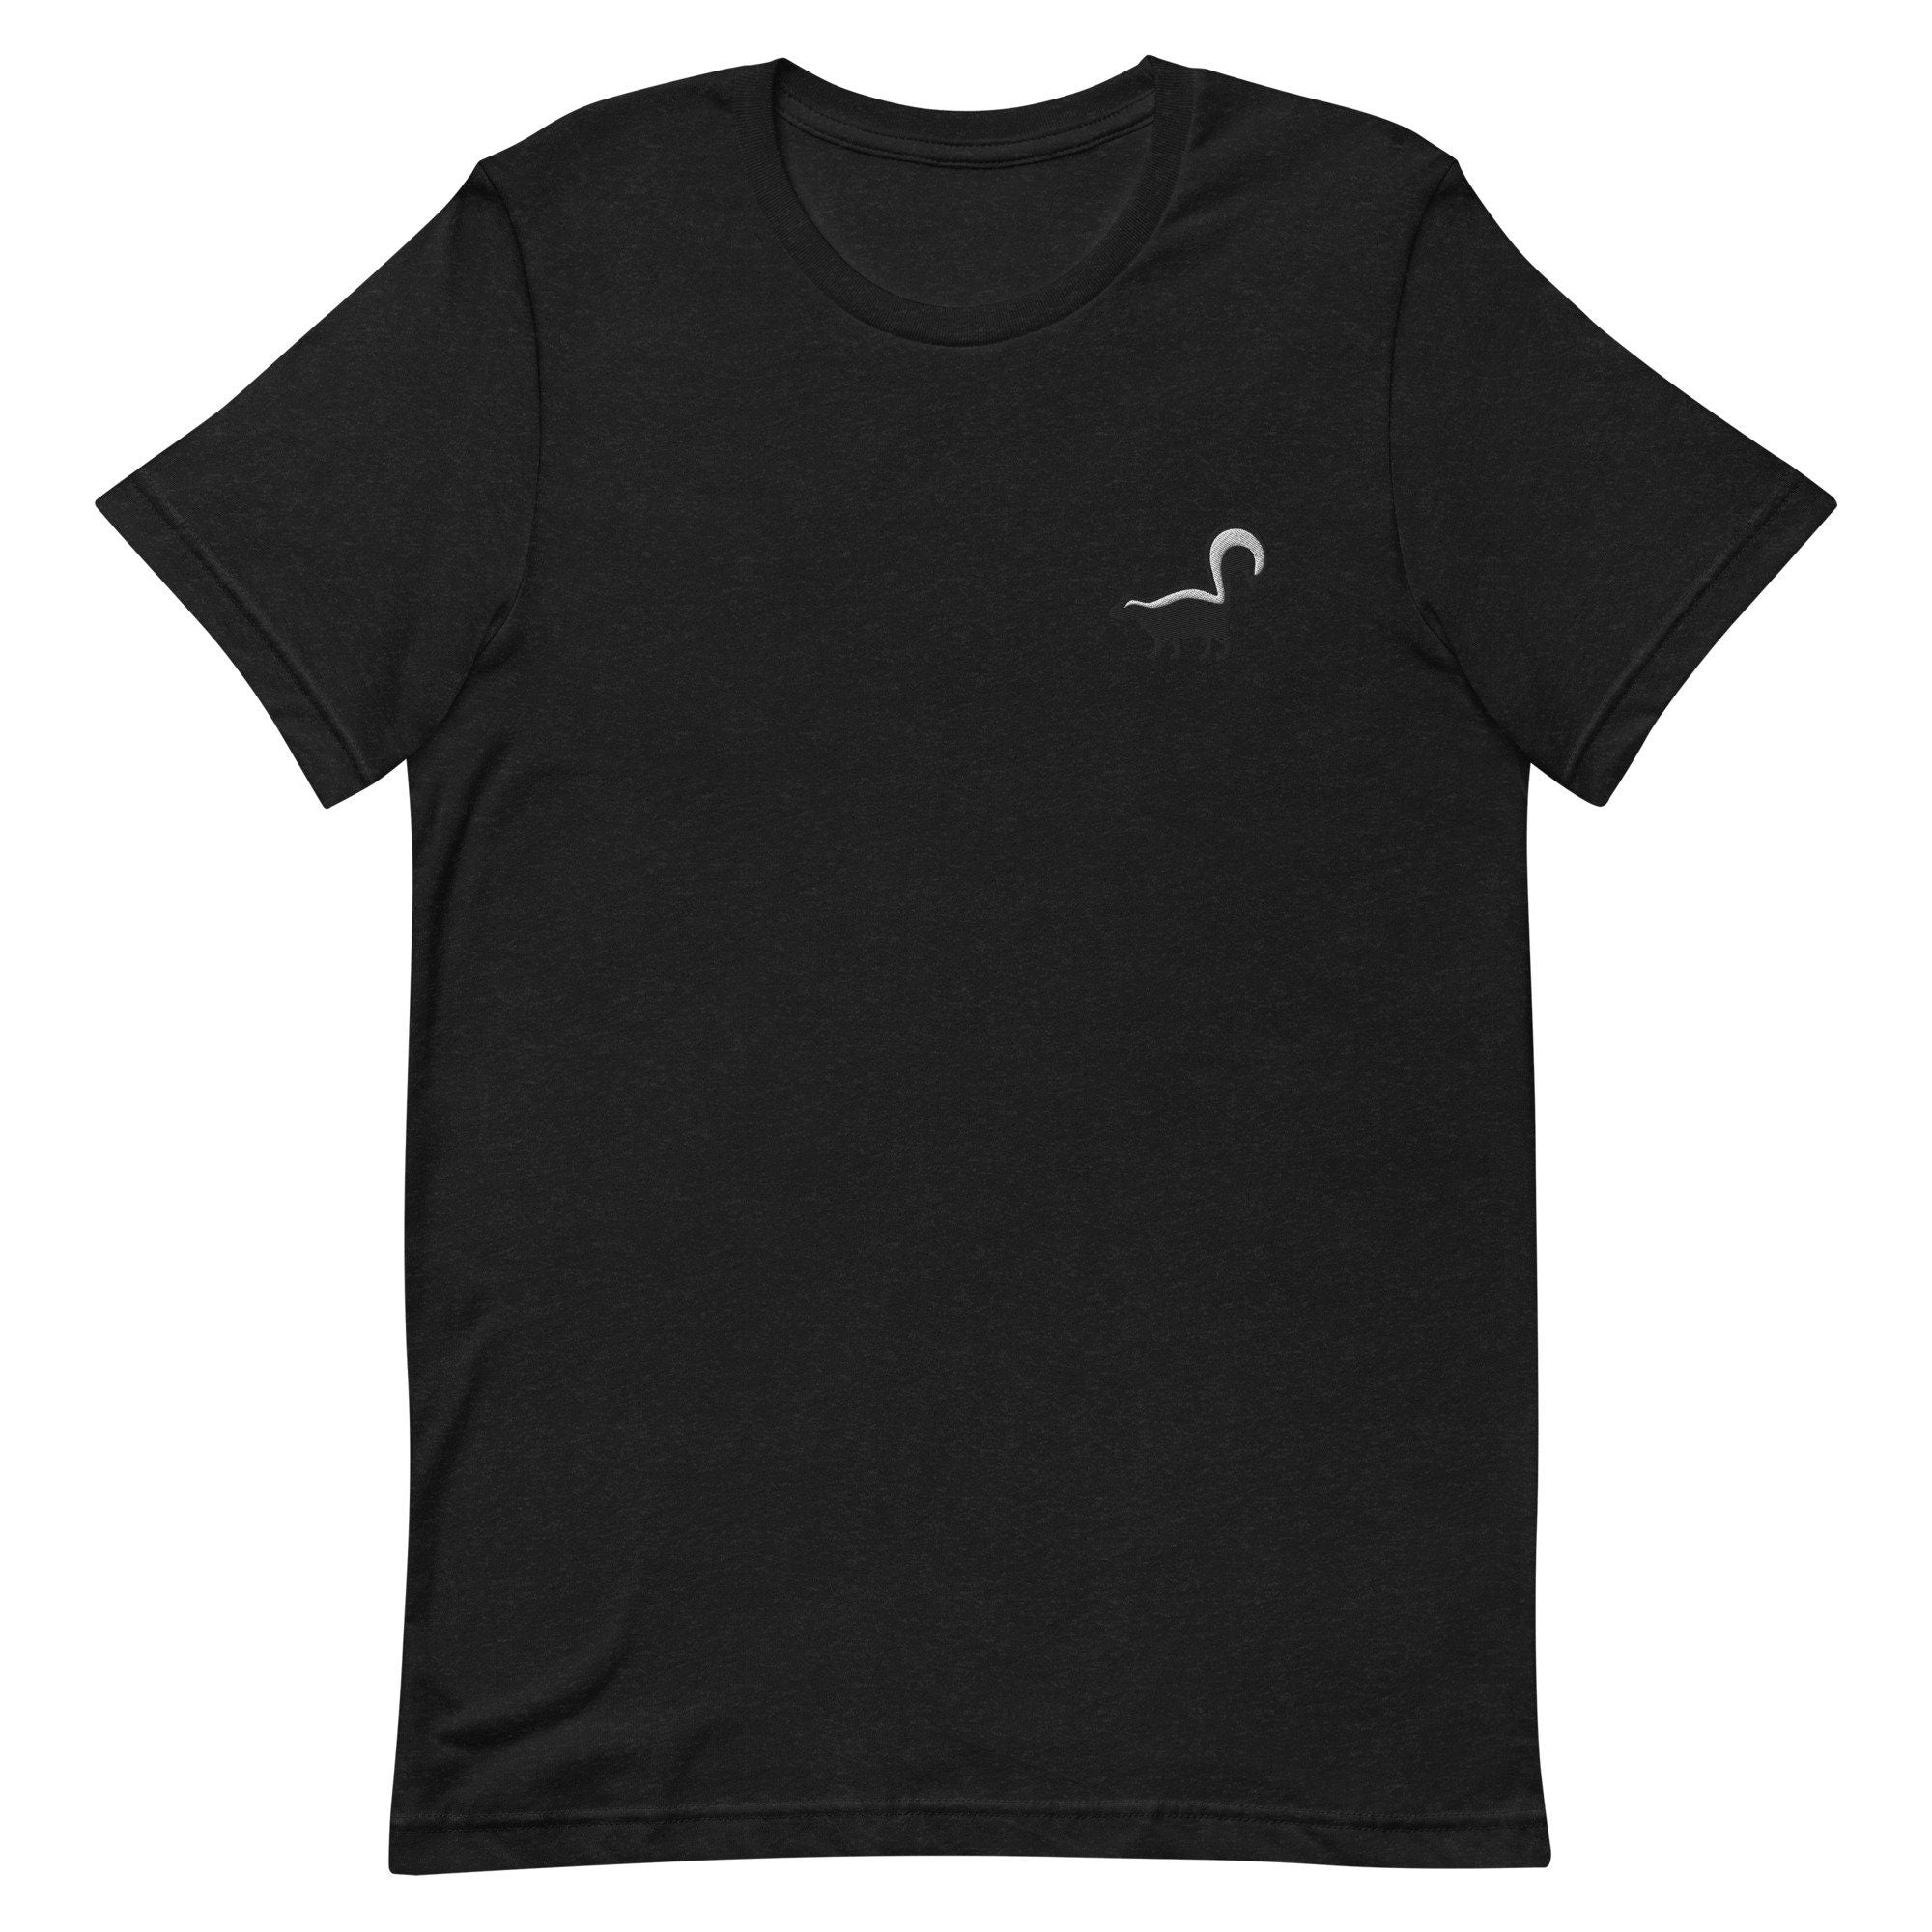 Skunk Premium Men's T-Shirt, Embroidered Men's T-Shirt Gift for Boyfriend, Men's Short Sleeve Shirt - Multiple Colors